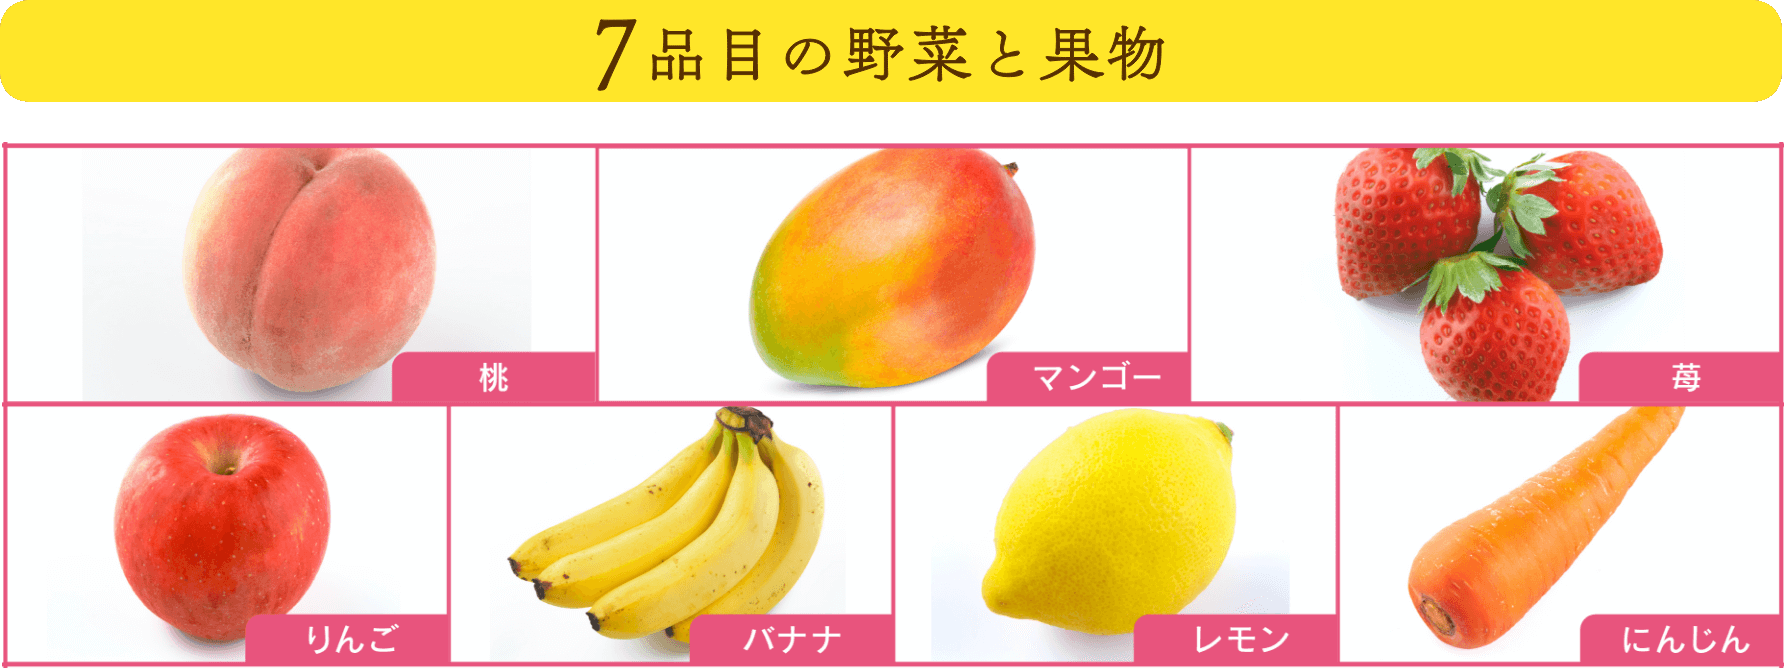 7品目の野菜と果物